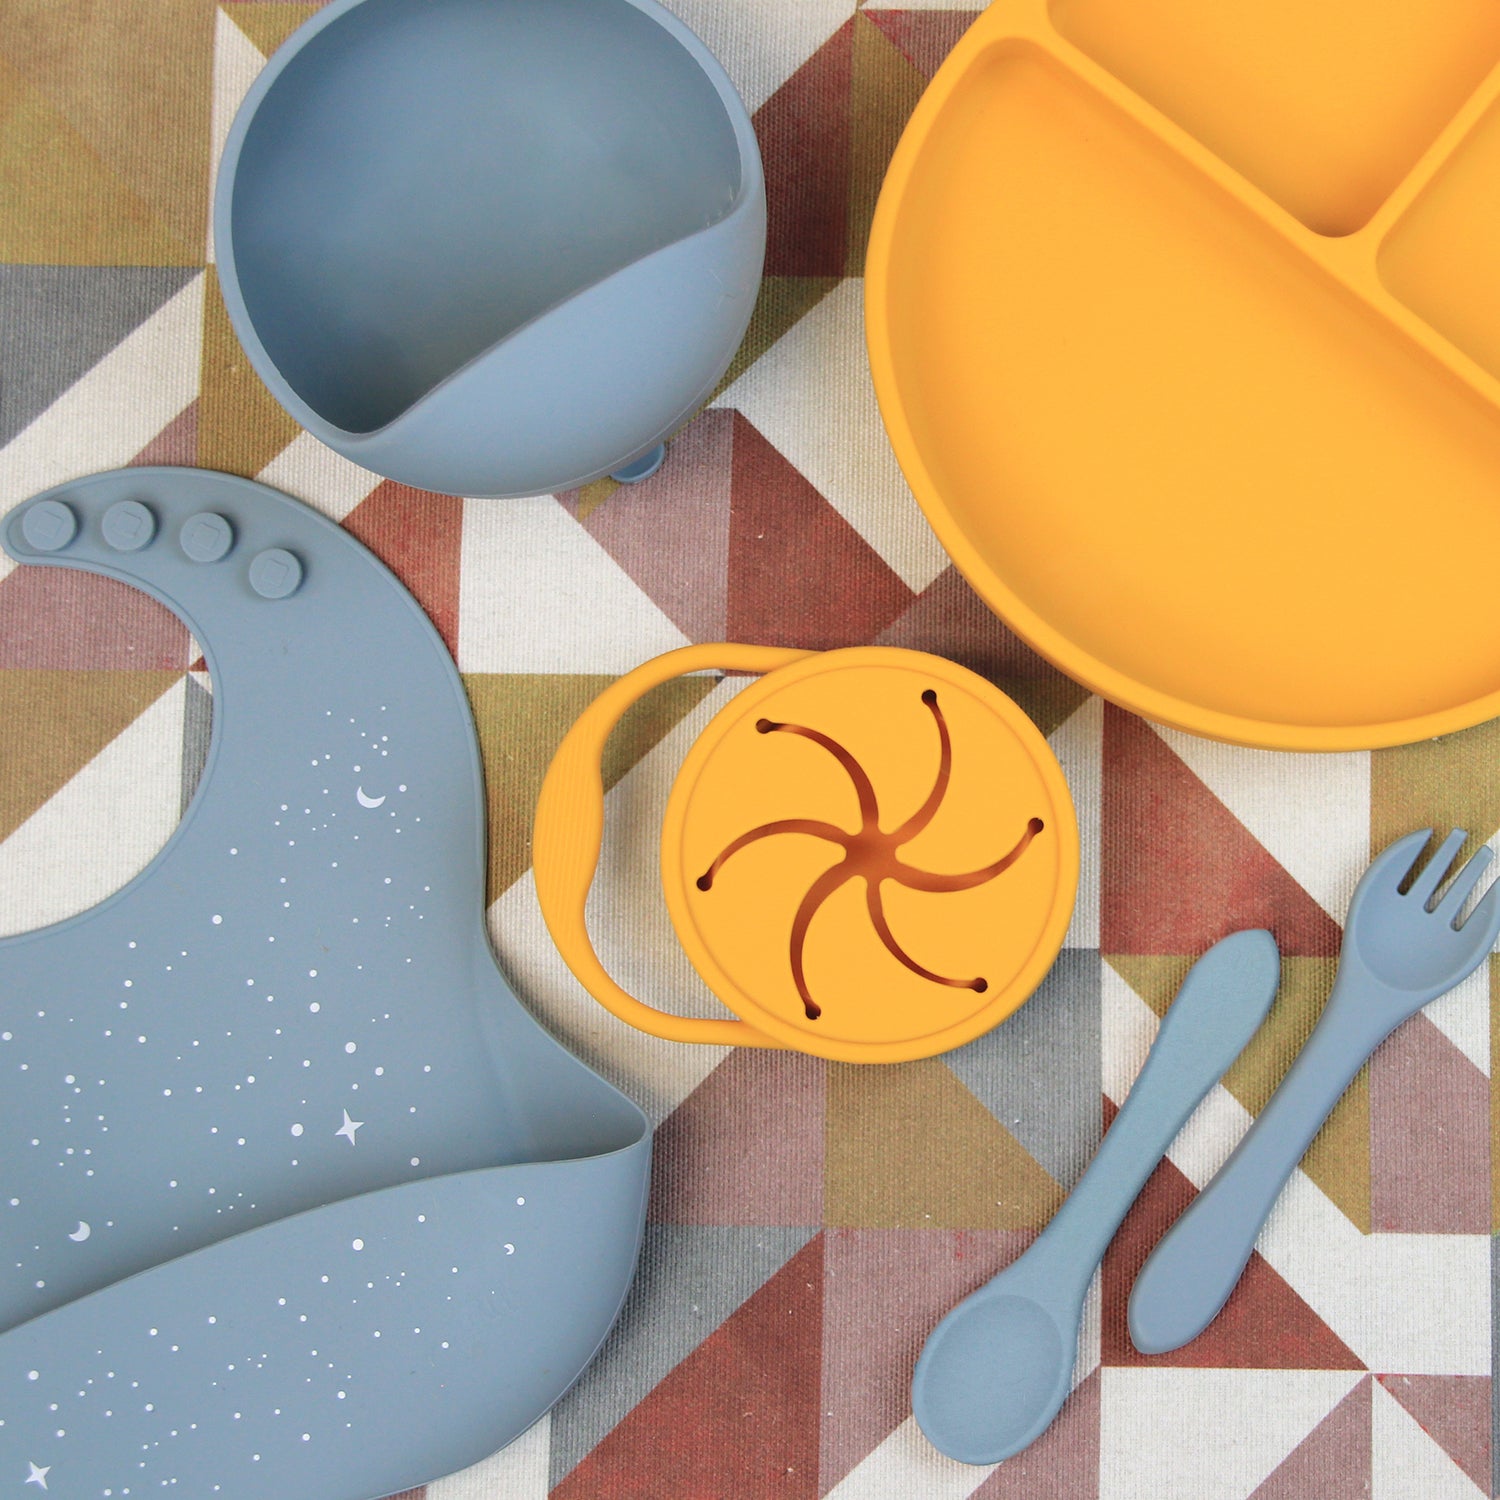 Set Completo de Alimentación para Bebé/Toddler - 6 piezas (Plato, Bowl, Cuchara, Tenedor, Babero y Vaso para Snacks) - Azul y Mango